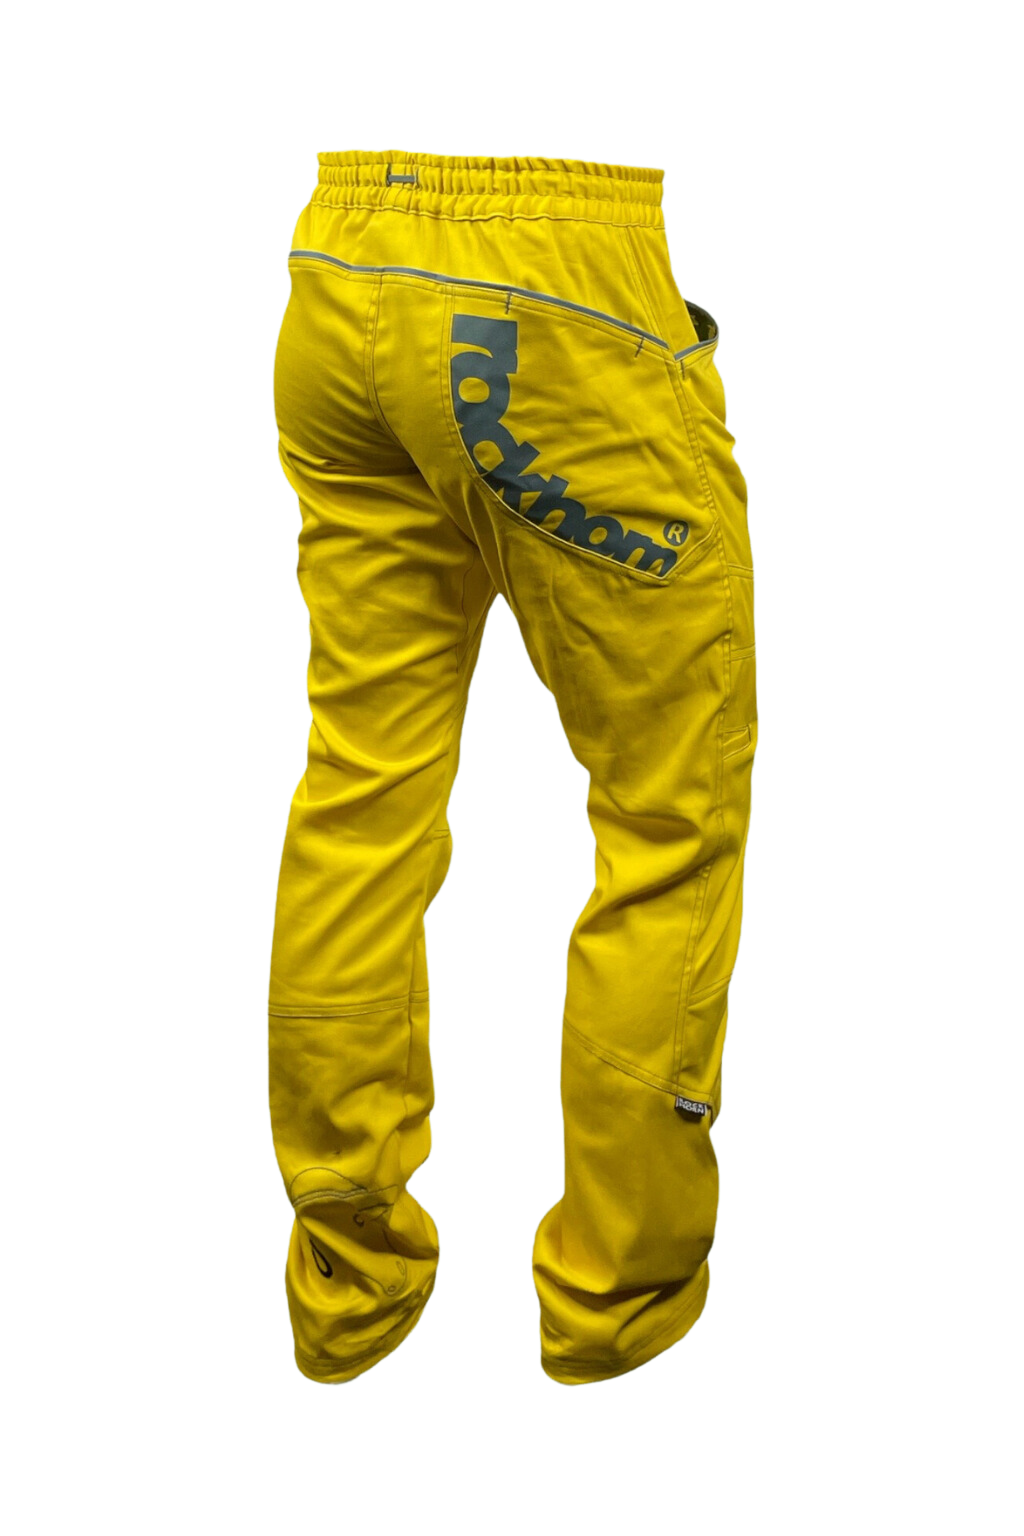 pánské kalhoty MORAVIA DREAMS NEW / zluté KALHOTY: XS